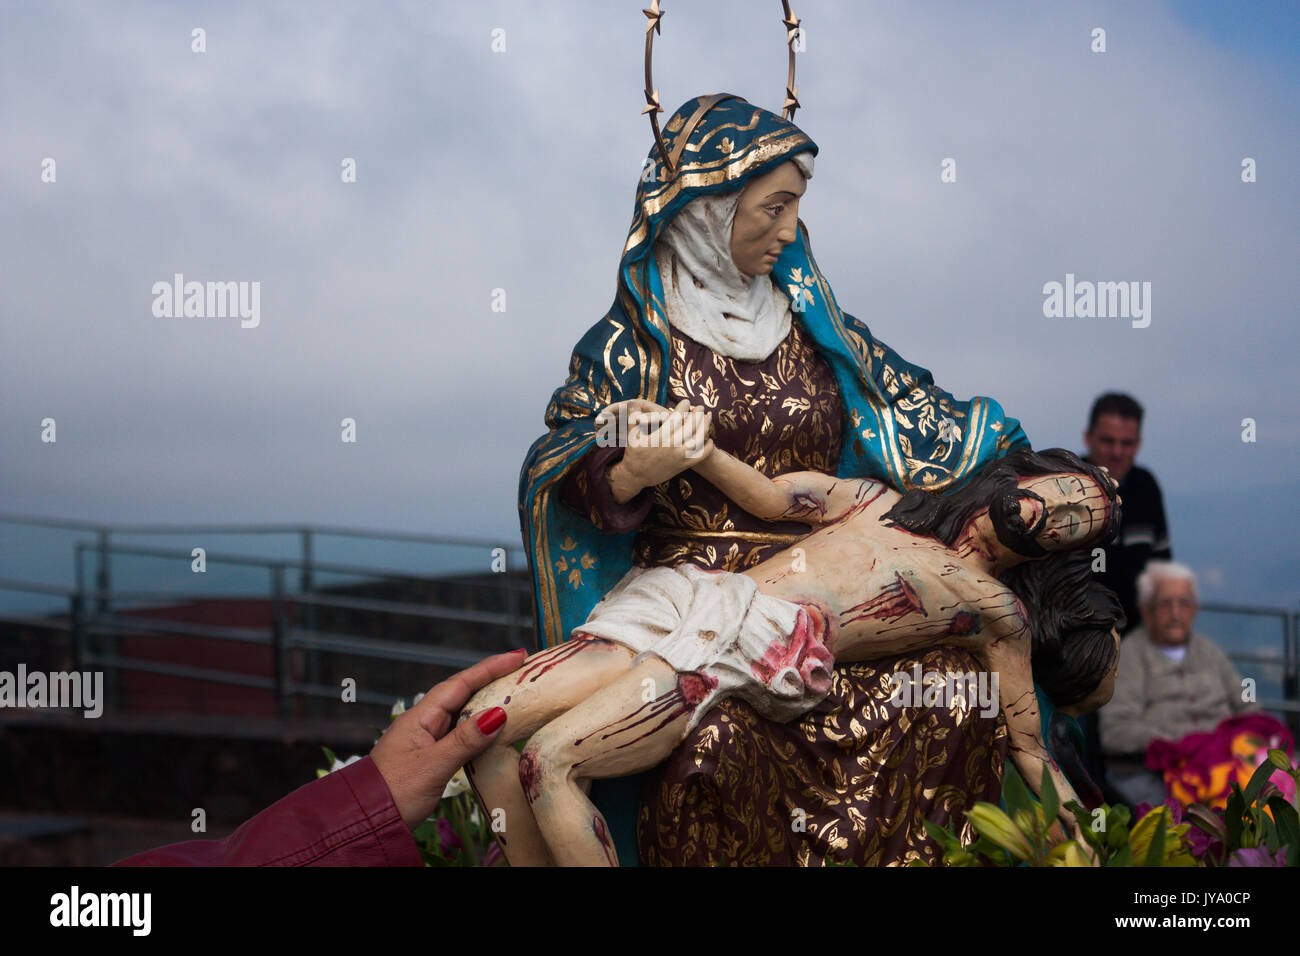 Heilige Bild der Muttergottes von der Barmherzigkeit, die Jesus Christus - Sanctuary in Brasilien - Caeté - Minas Gerais Stockfoto